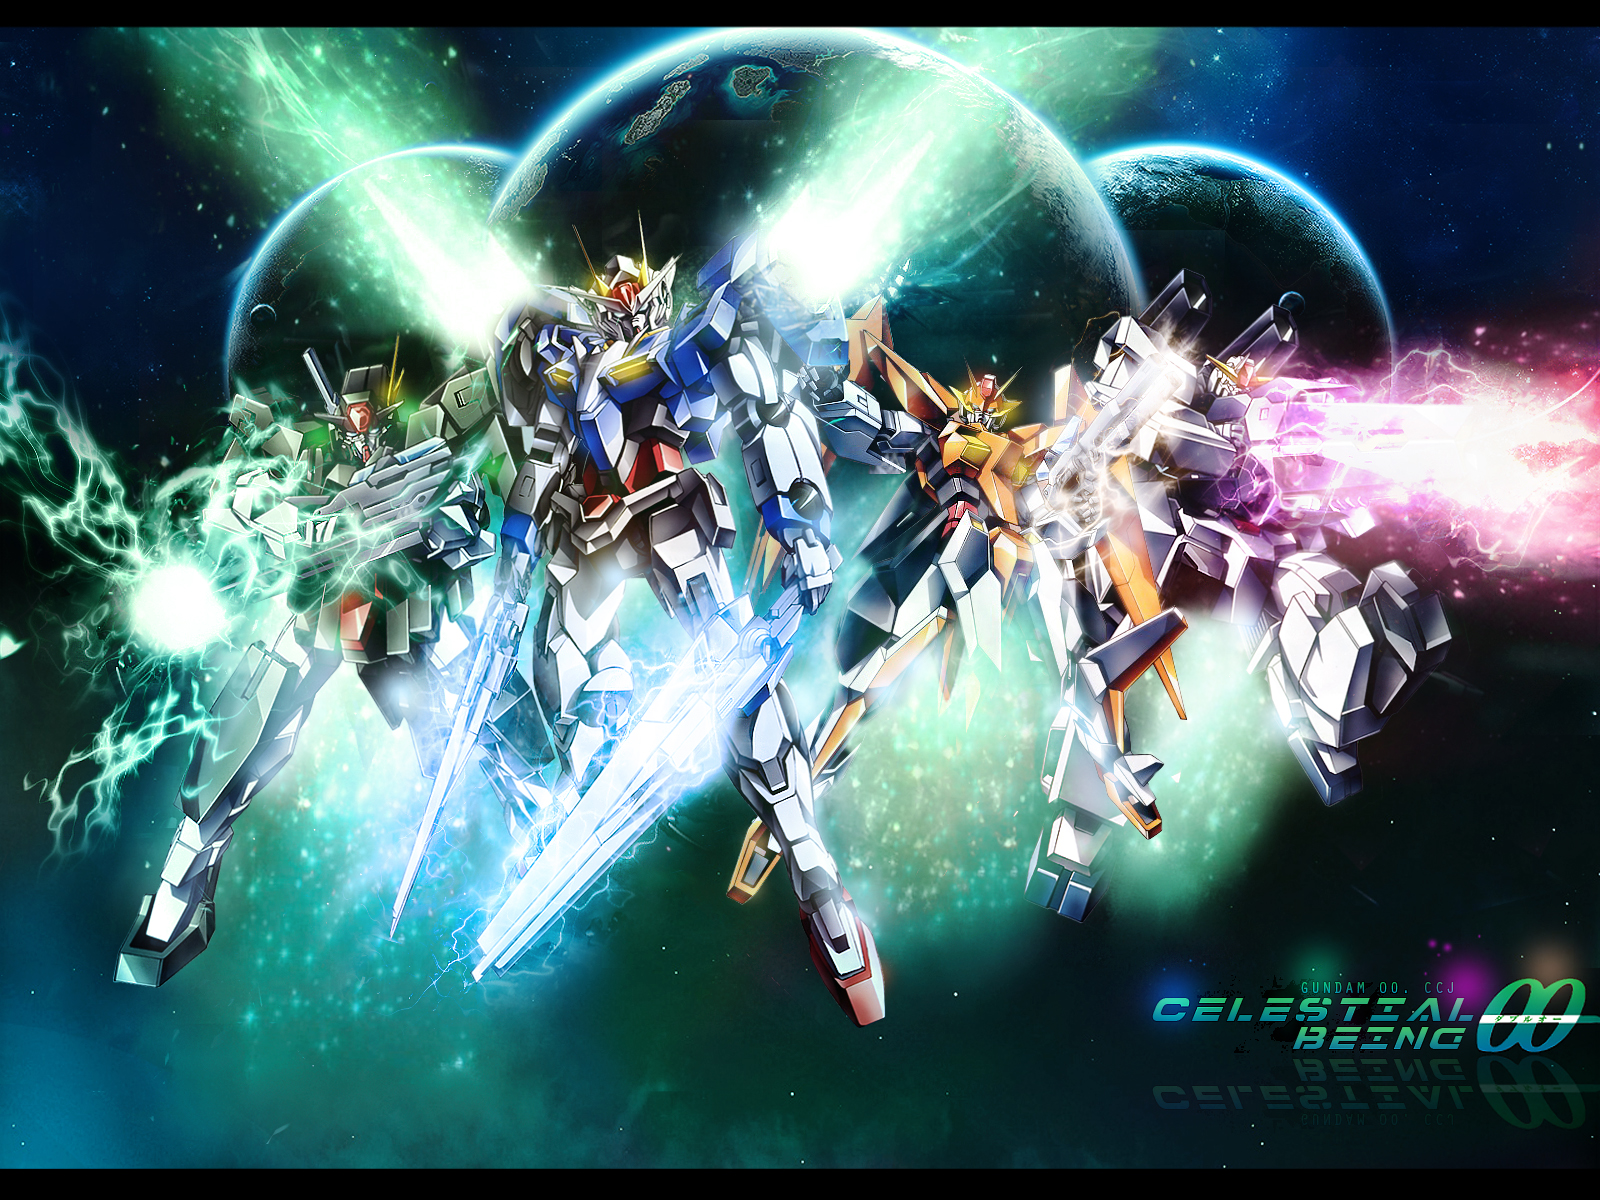 Mobile Suit Gundam Wallpaper Celestial